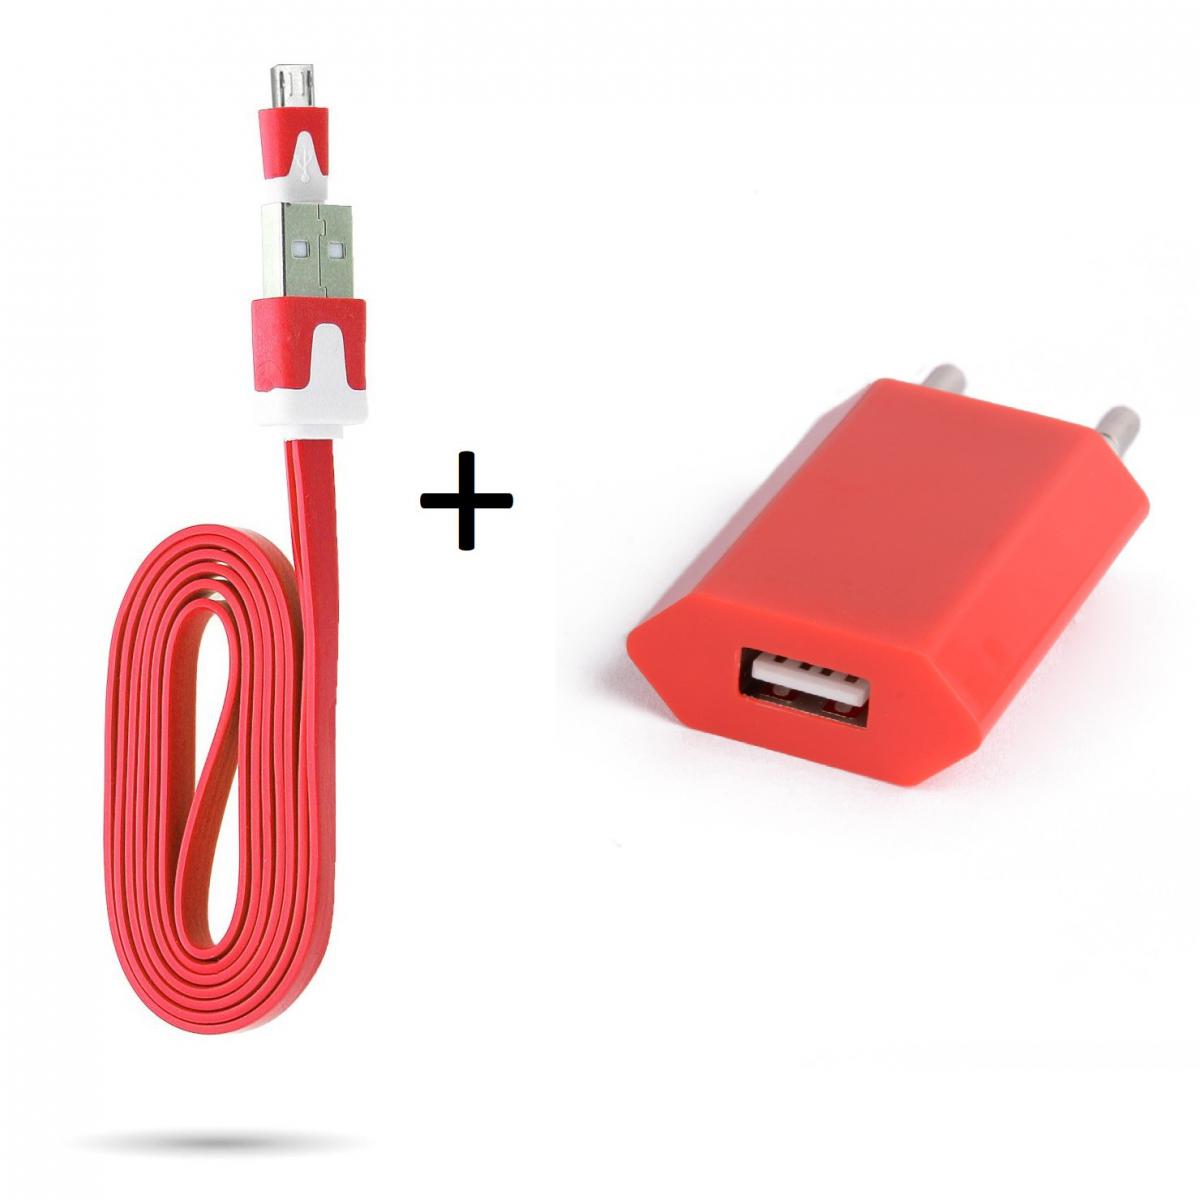 Shot - Cable Noodle 1m Chargeur + Prise Secteur pour WIKO View 3 Lite Smartphone Micro USB Murale Pack Android (ROUGE) - Chargeur secteur téléphone